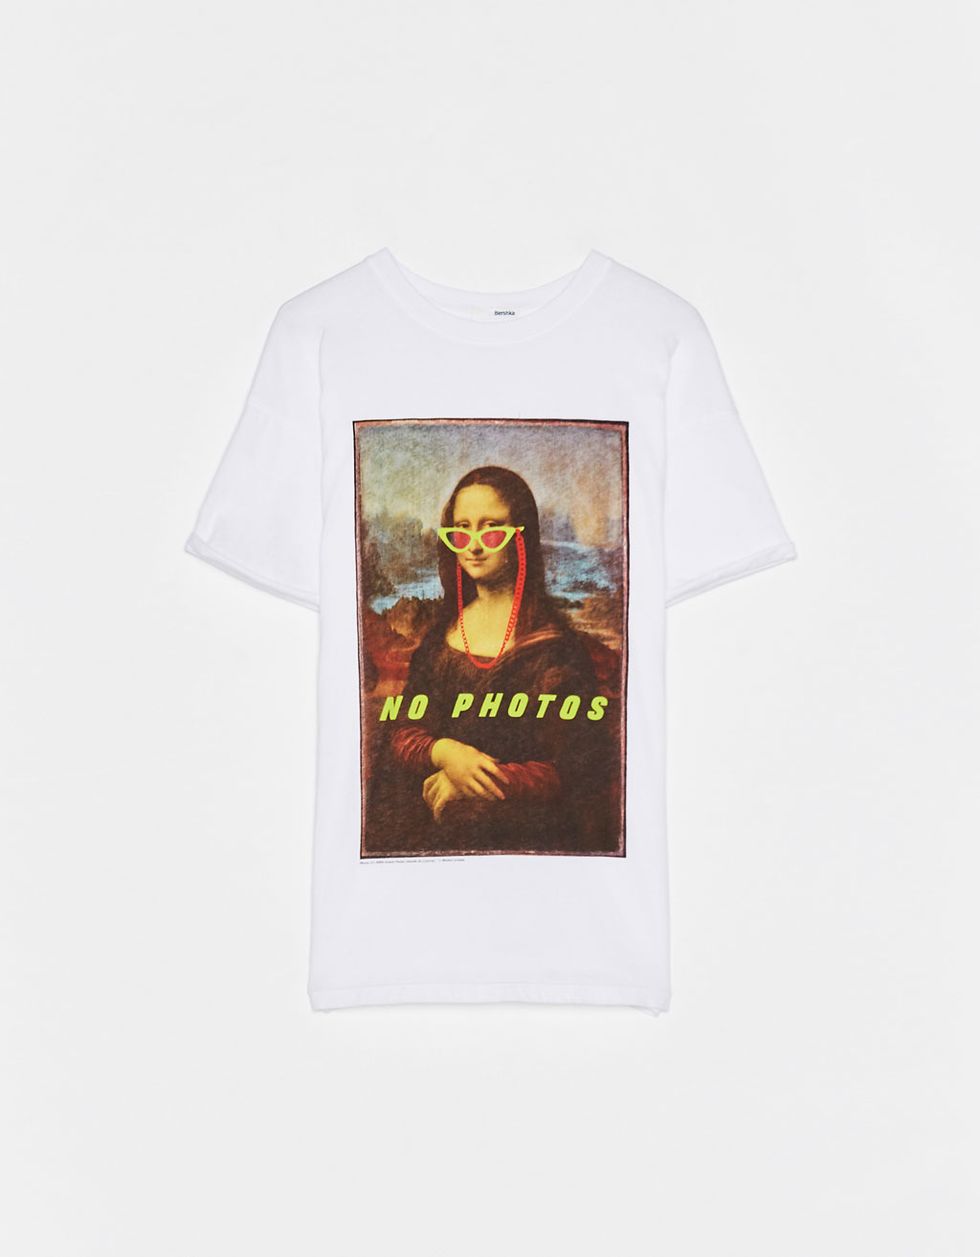 Bershka y Stradivarius lanzan unas camisetas la Mona Lisa muy 'cool'